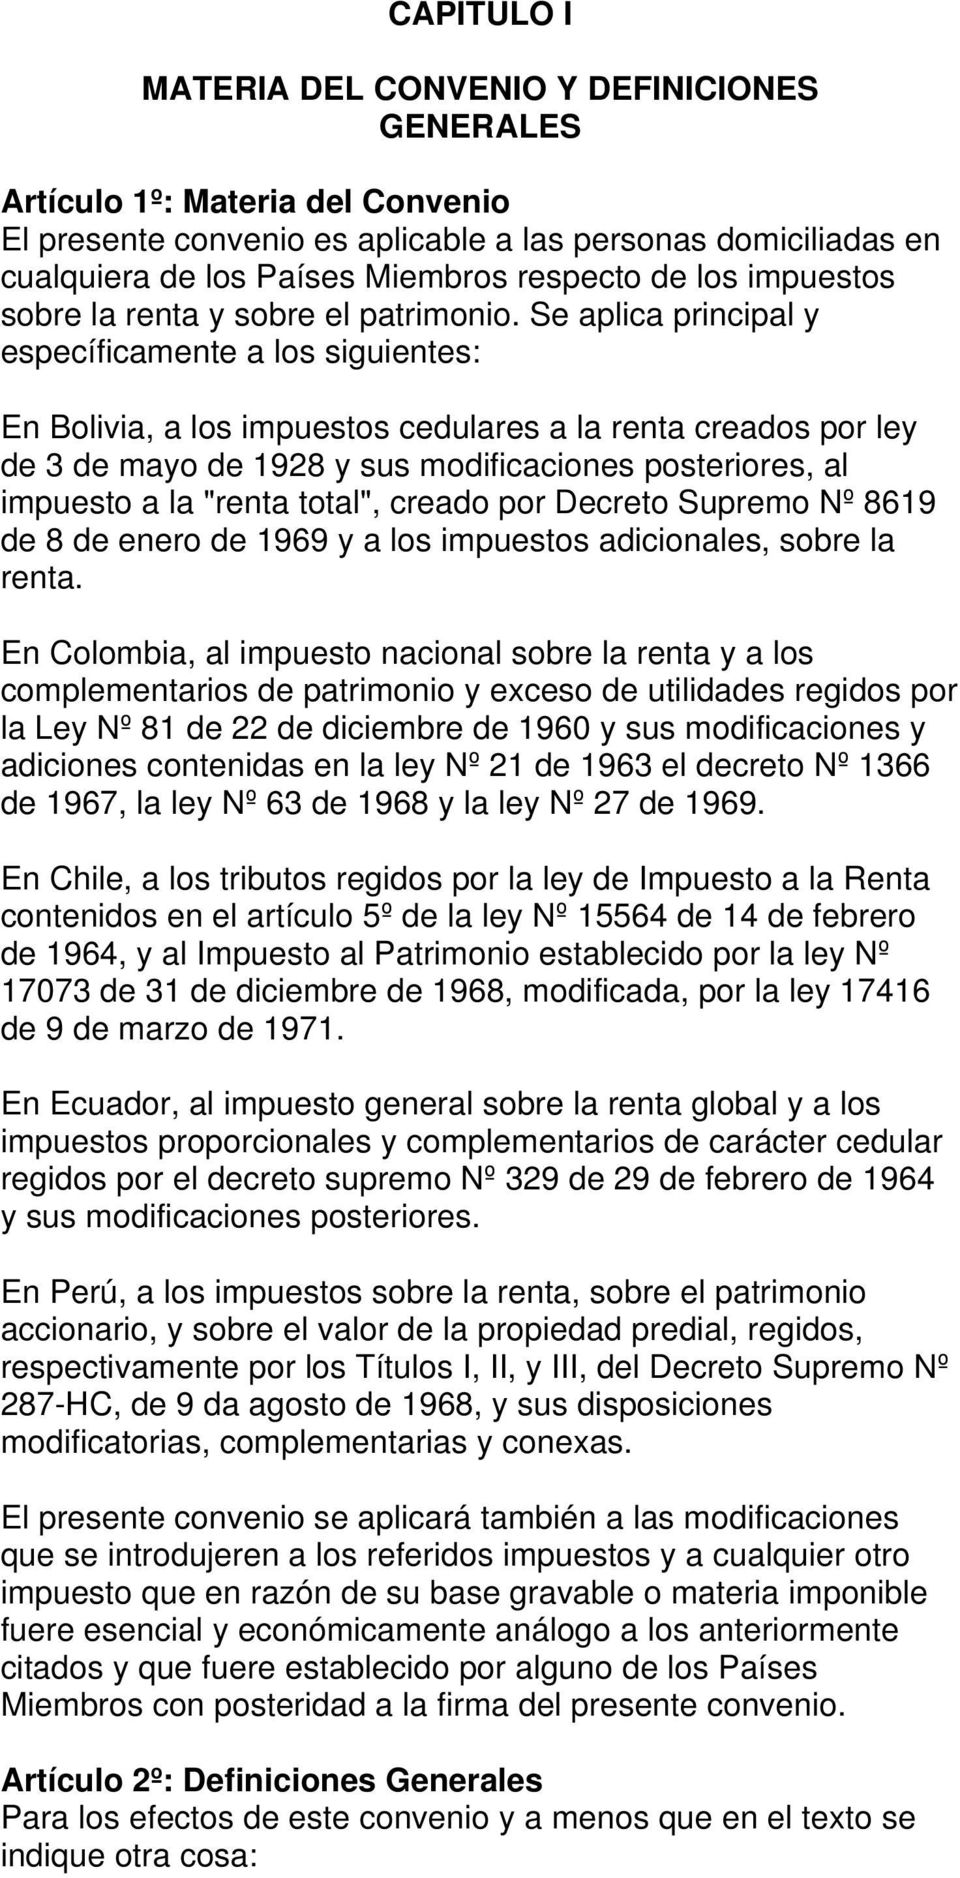 Se aplica principal y específicamente a los siguientes: En Bolivia, a los impuestos cedulares a la renta creados por ley de 3 de mayo de 1928 y sus modificaciones posteriores, al impuesto a la "renta